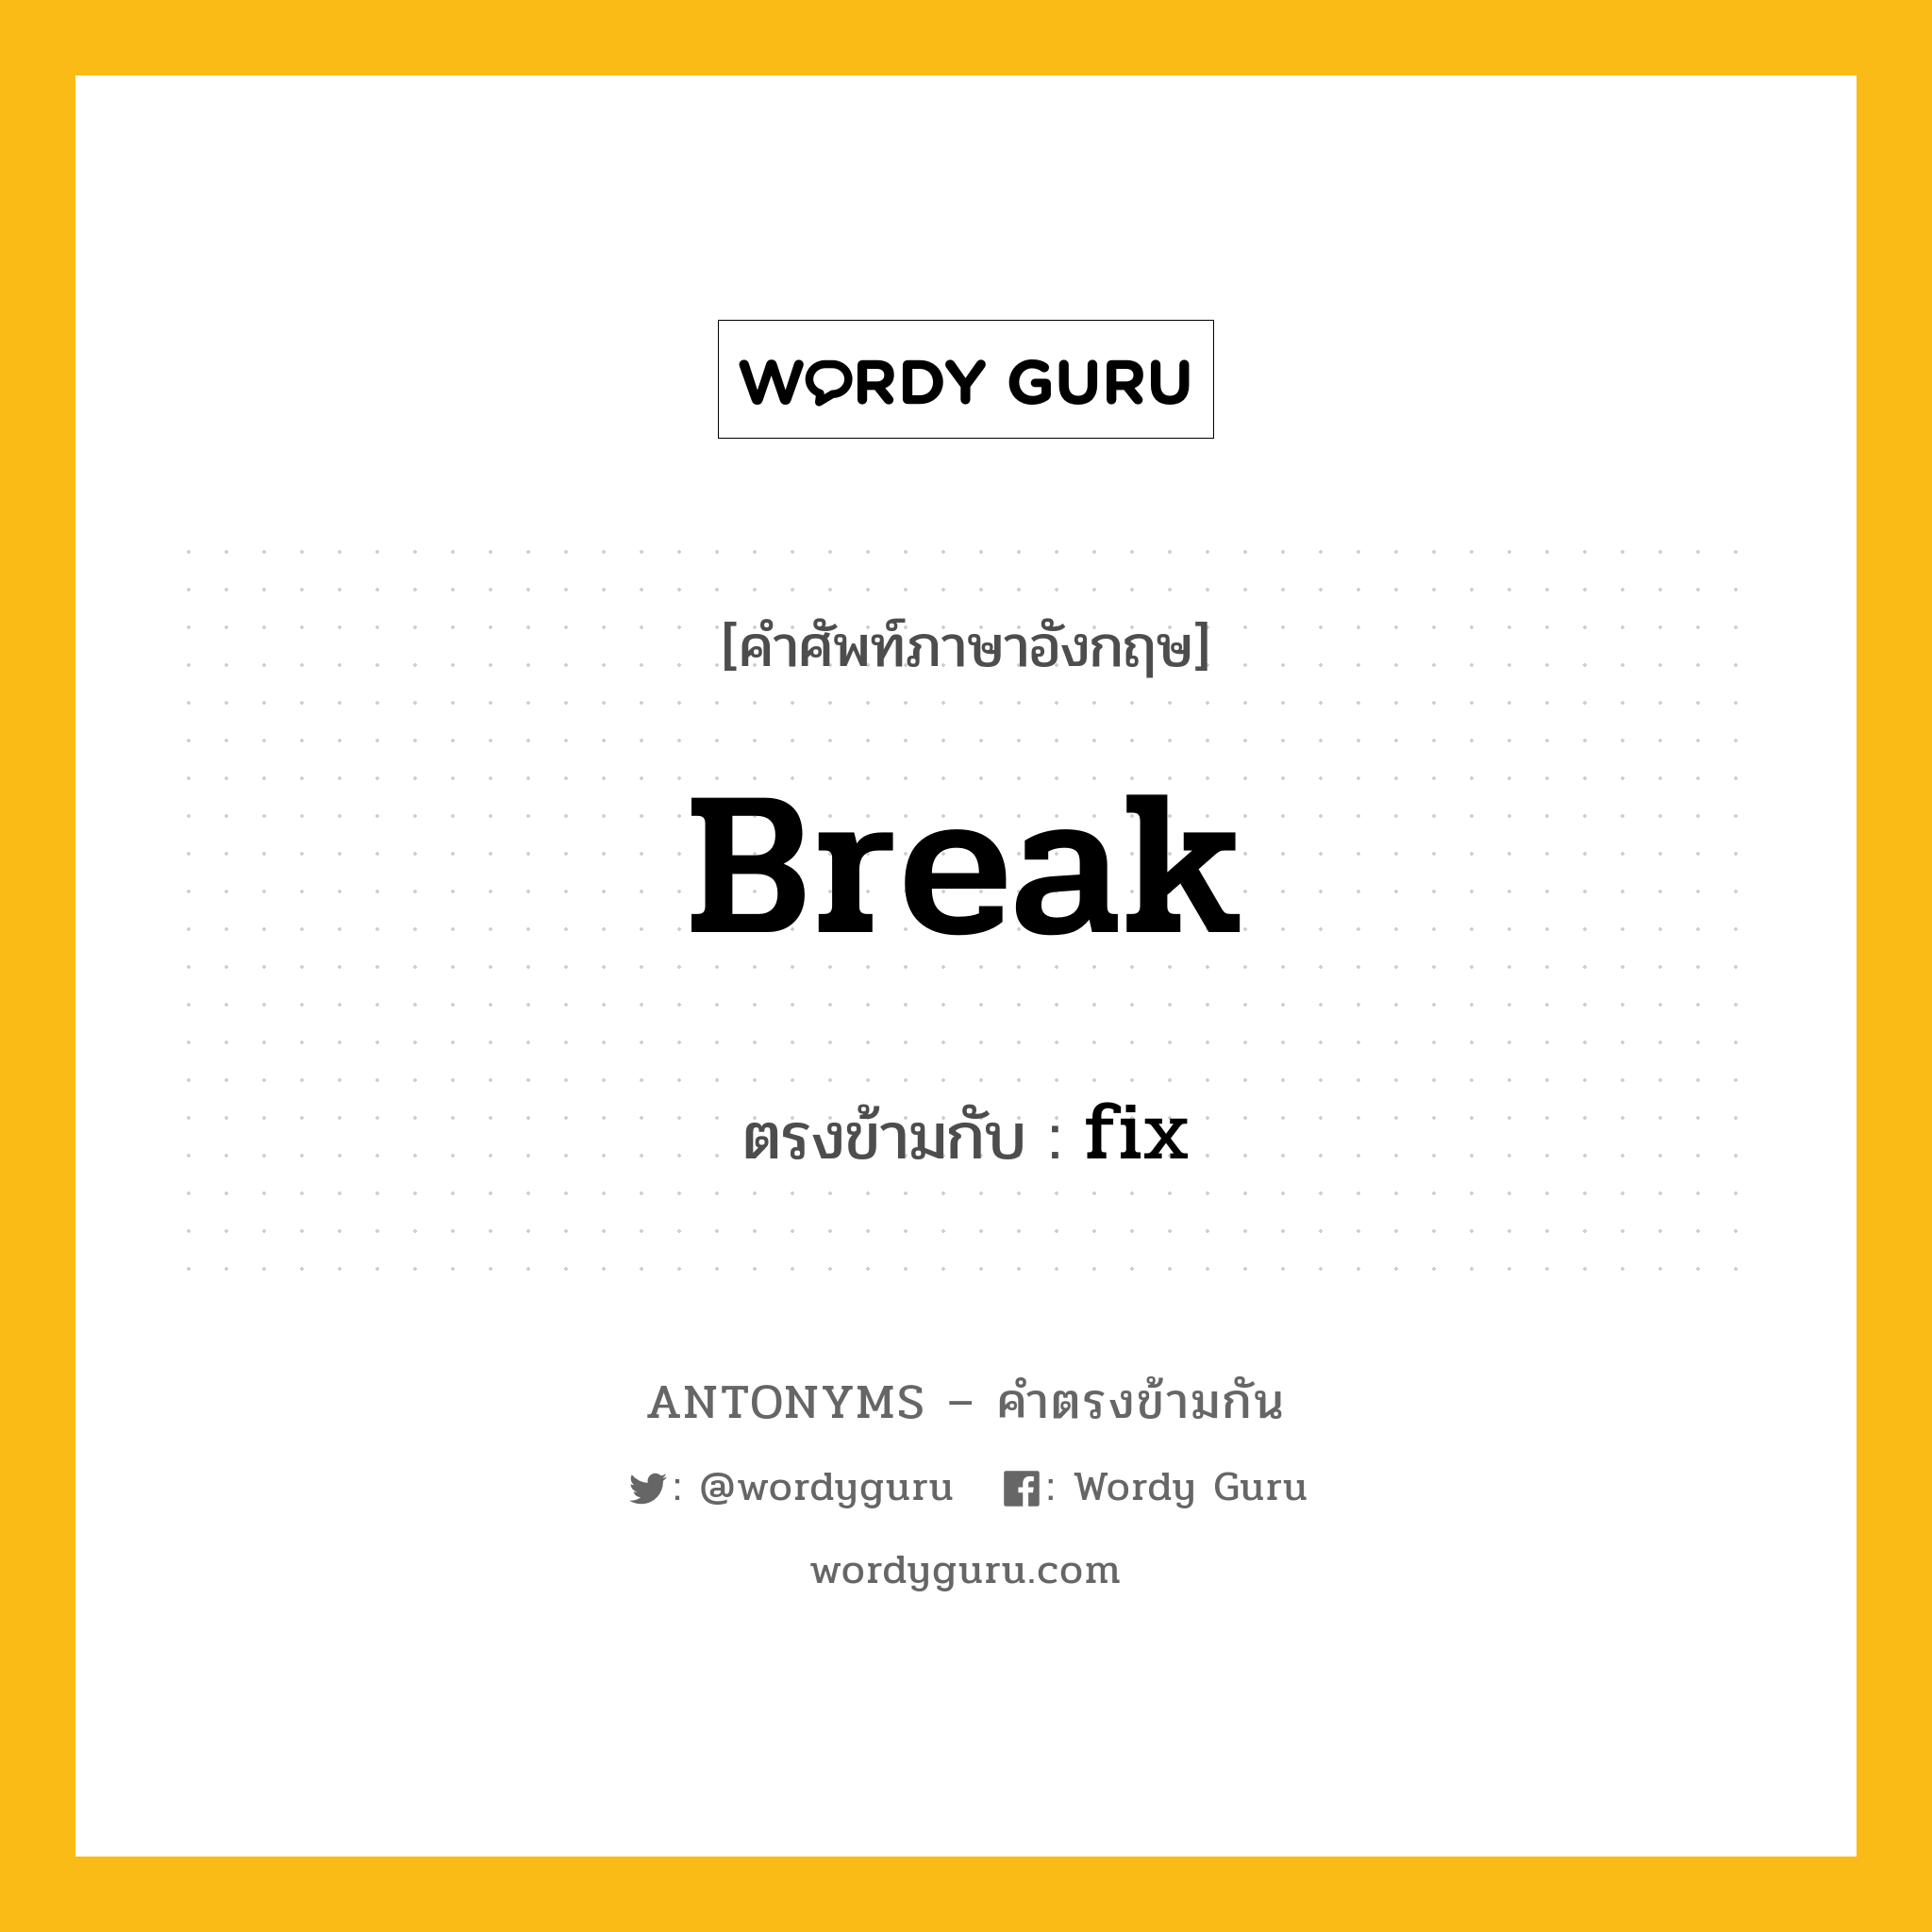 break เป็นคำตรงข้ามกับคำไหนบ้าง?, คำศัพท์ภาษาอังกฤษ break ตรงข้ามกับ fix หมวด fix